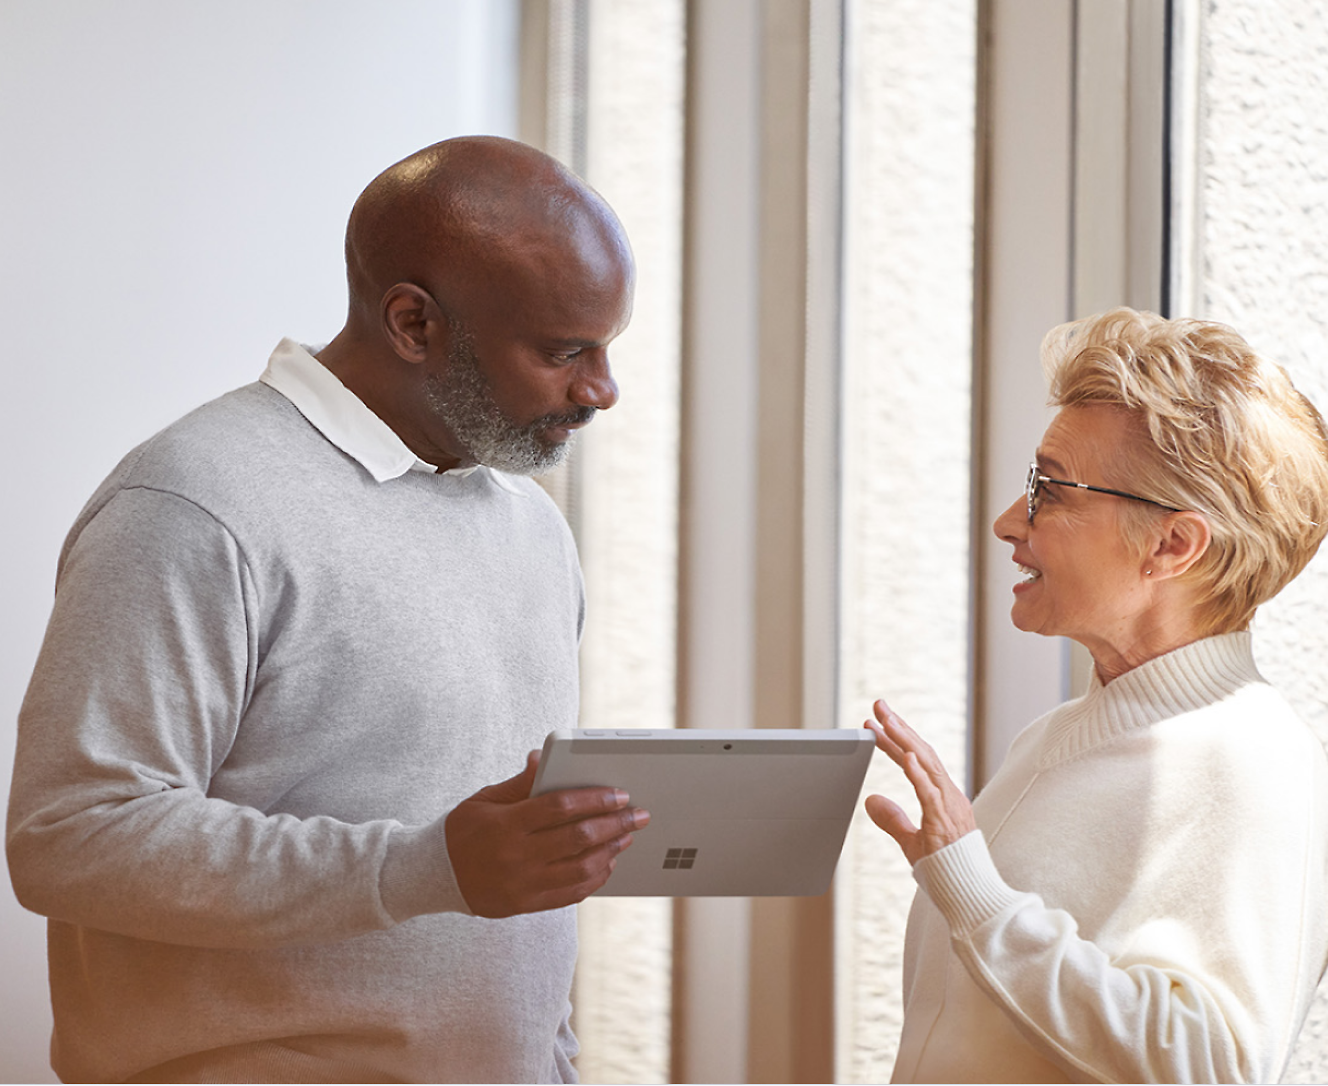 Egy férfi egy Surface Pro készülékkel a kezében beszélget egy nővel